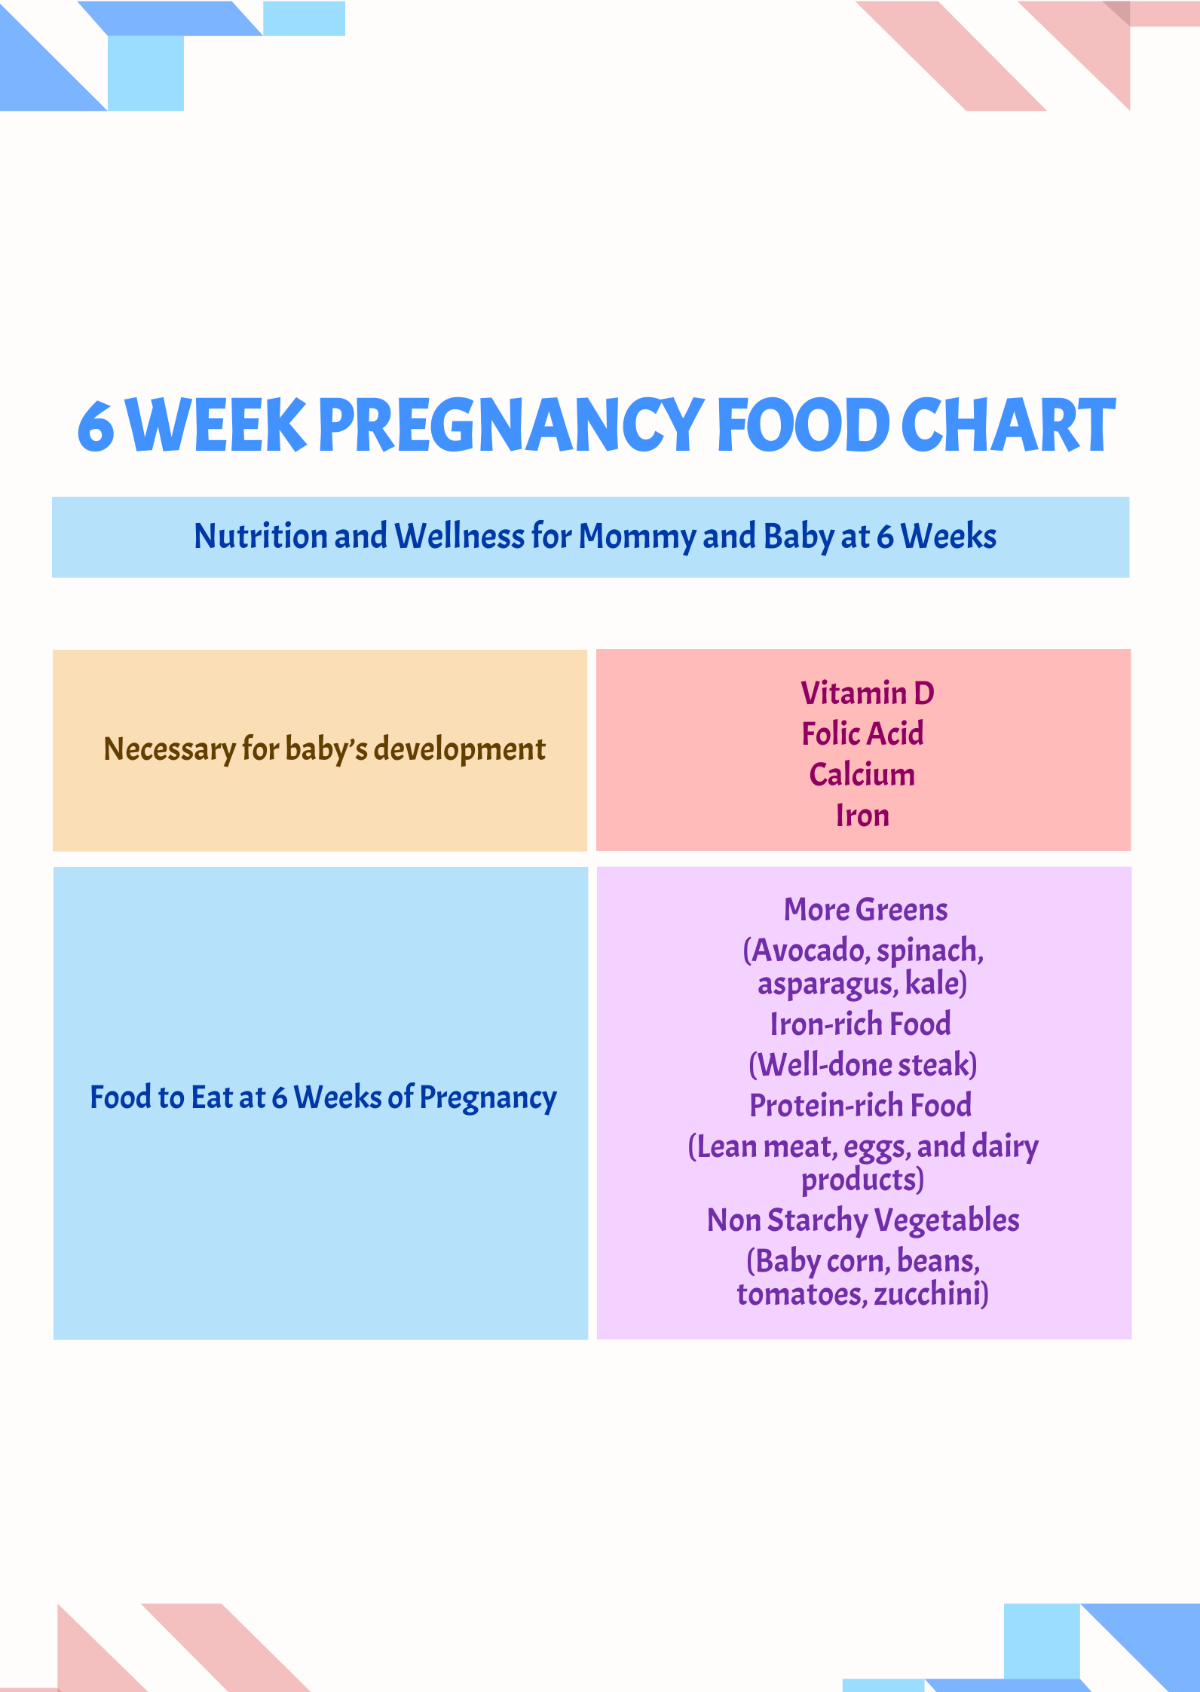 6 Week Pregnancy Food Chart Template